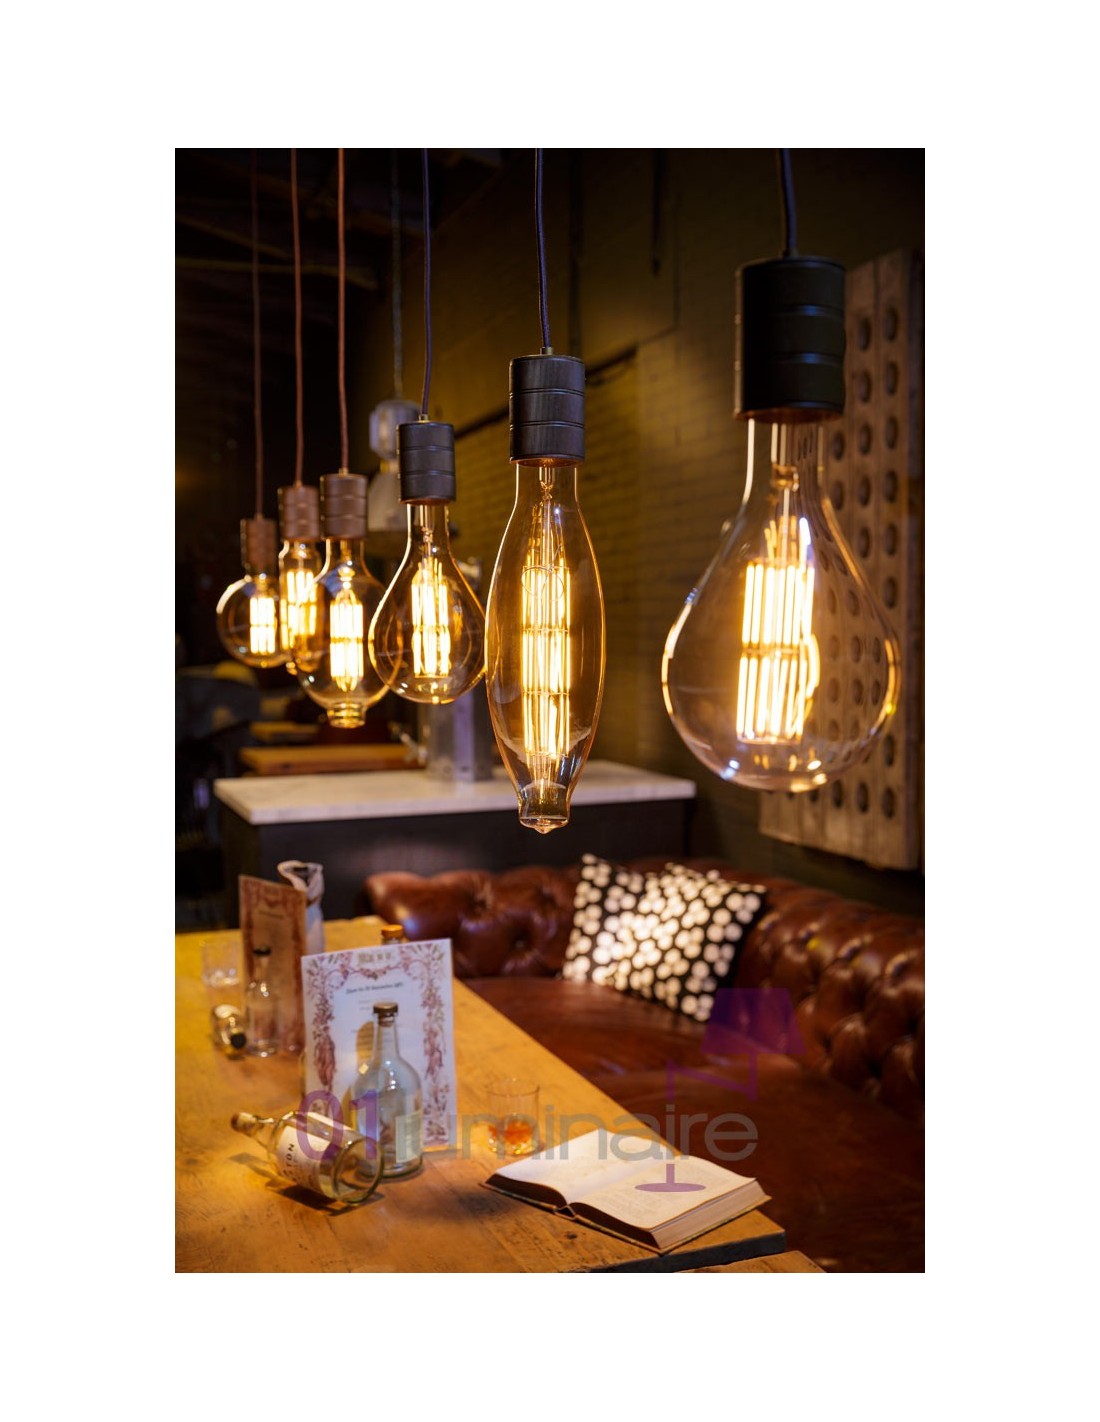 Ampoule E27 led retro couleur ambre - La Maison De Judith